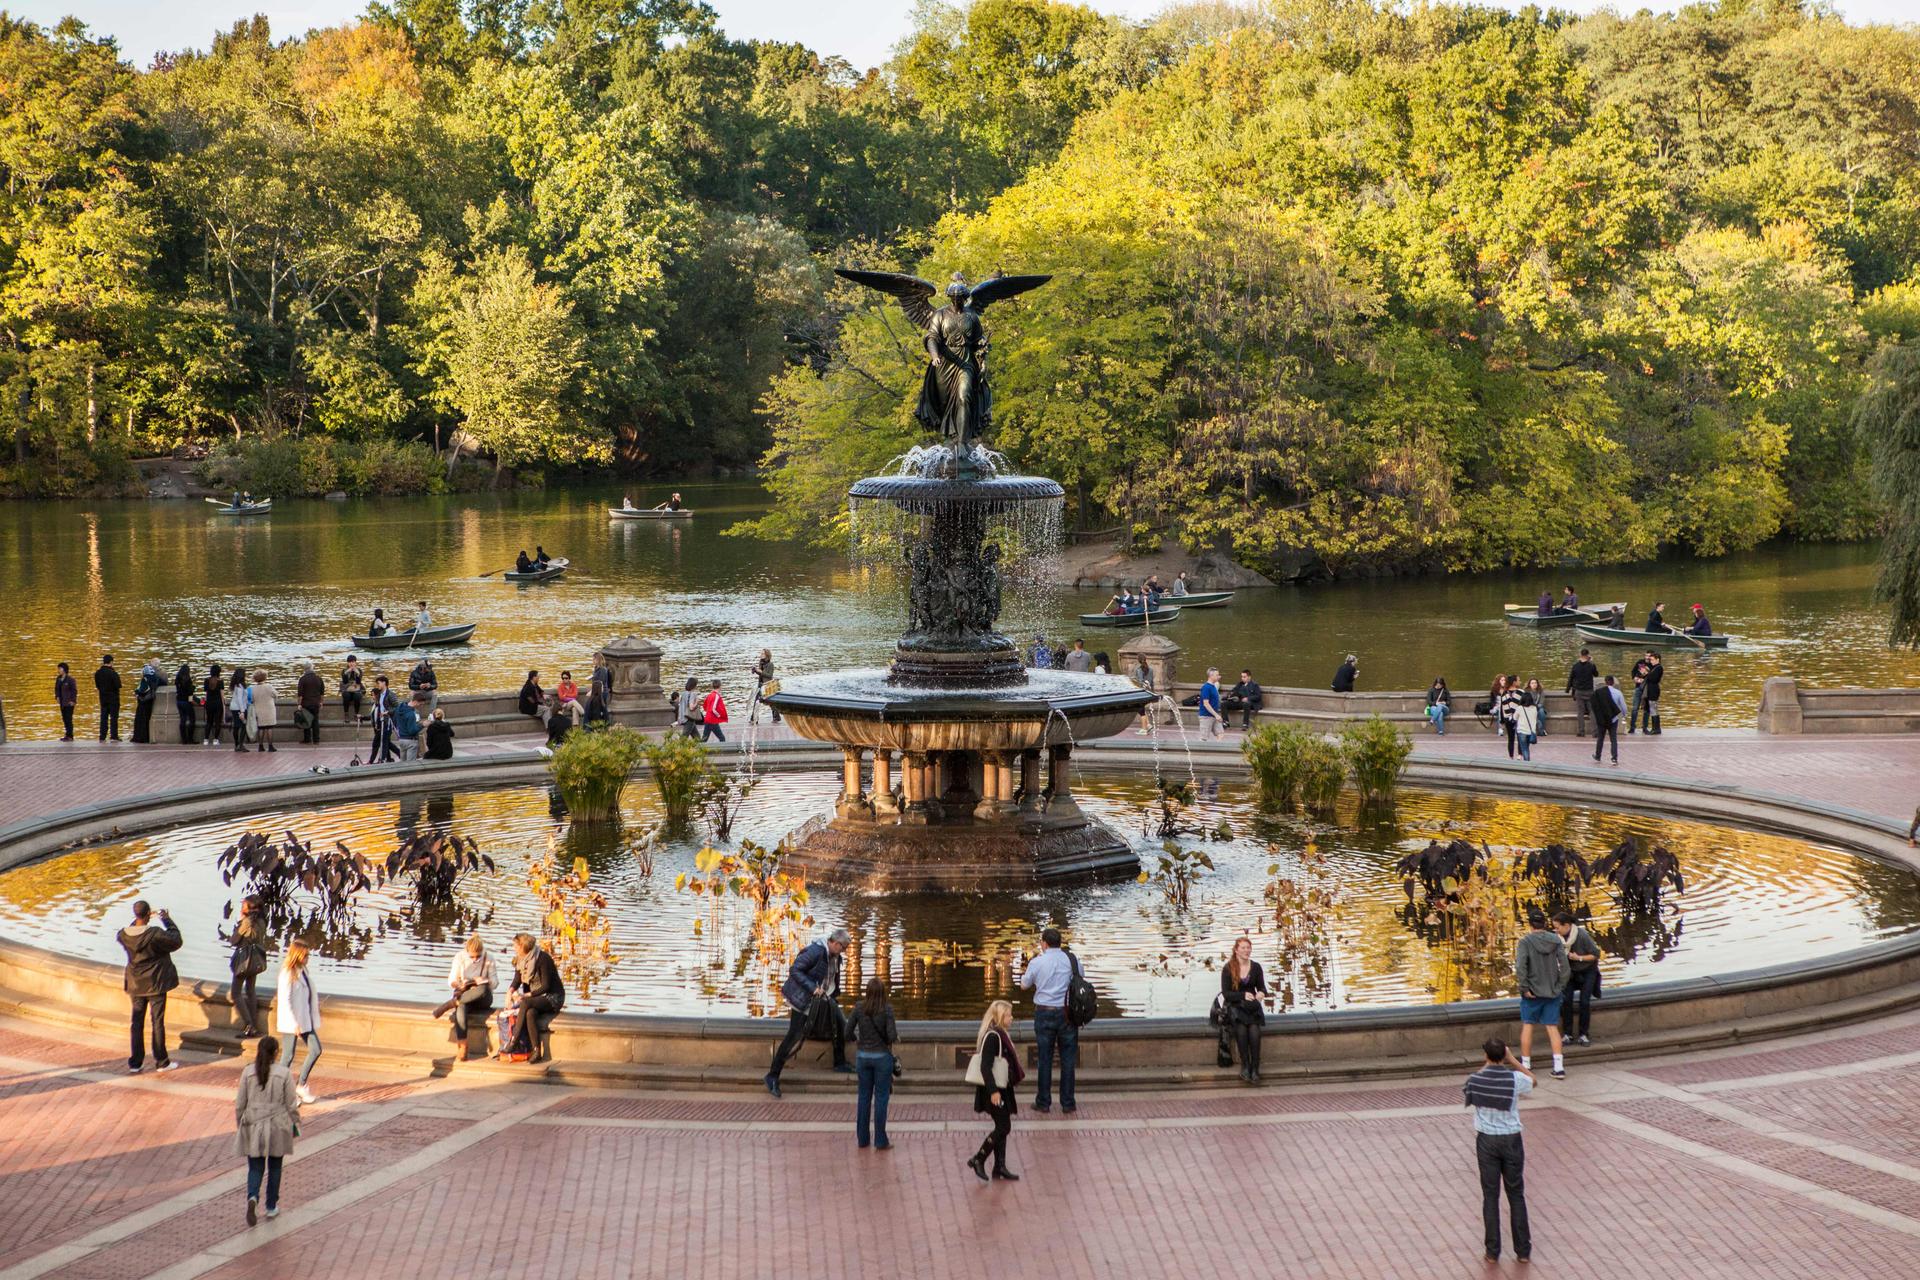 Bethesda Fountain in Central Park, Manhattan